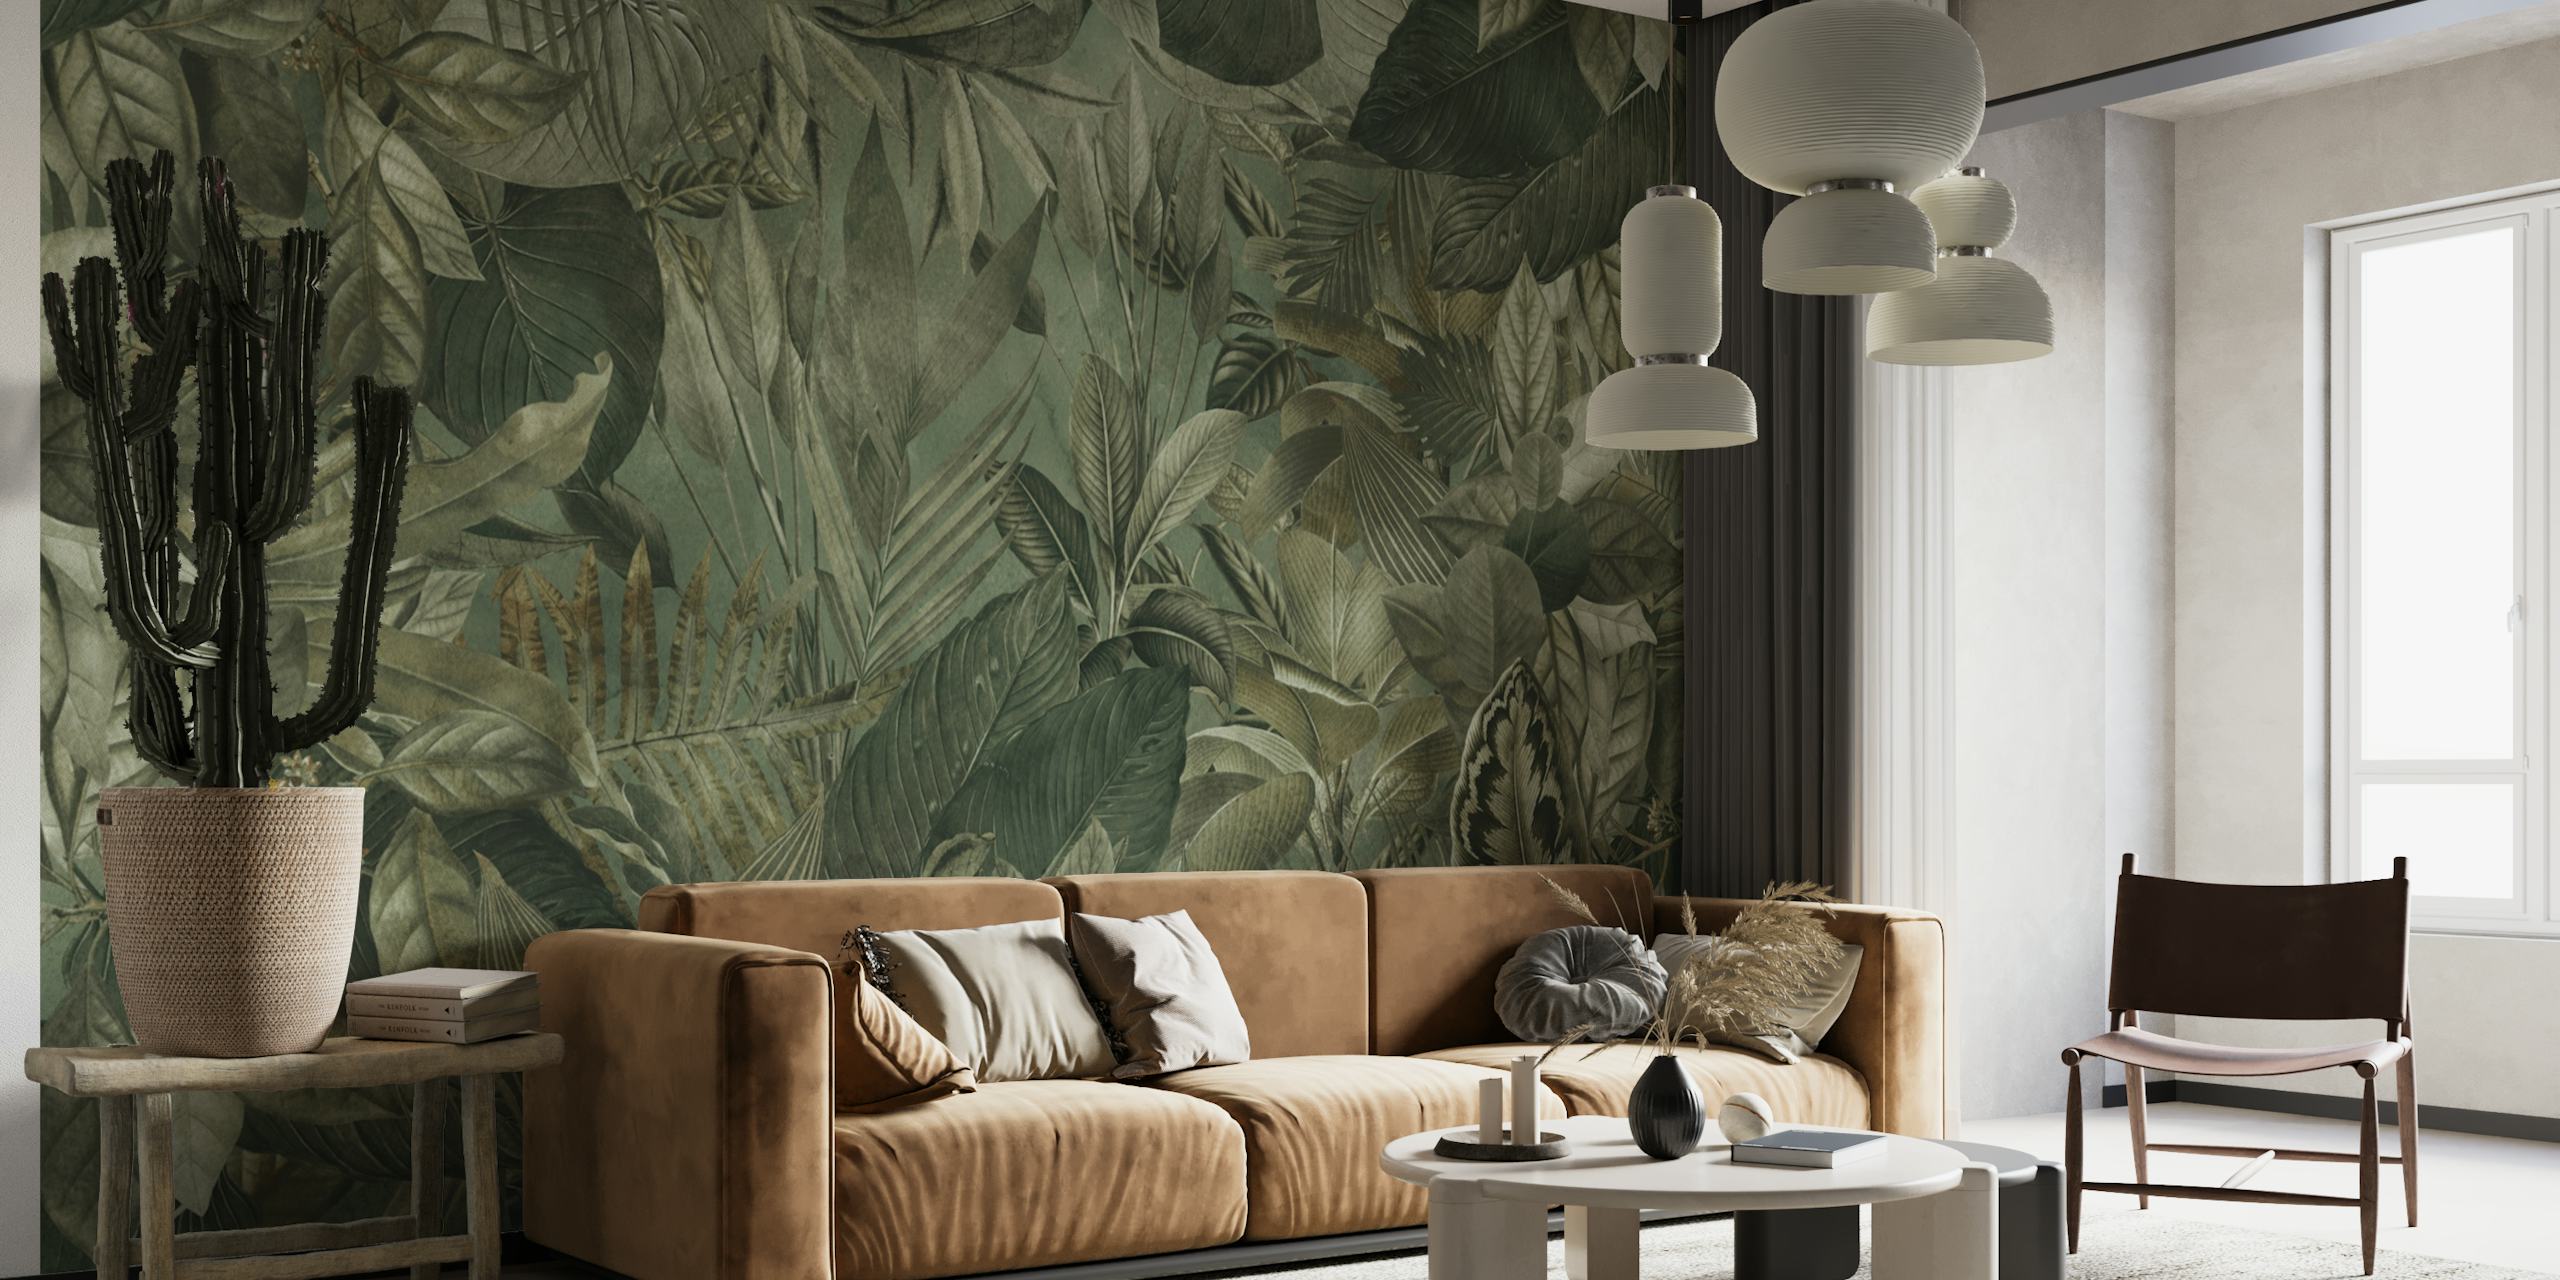 Mural com tema de selva tropical apresentando folhagem verde oliva e elementos botânicos.